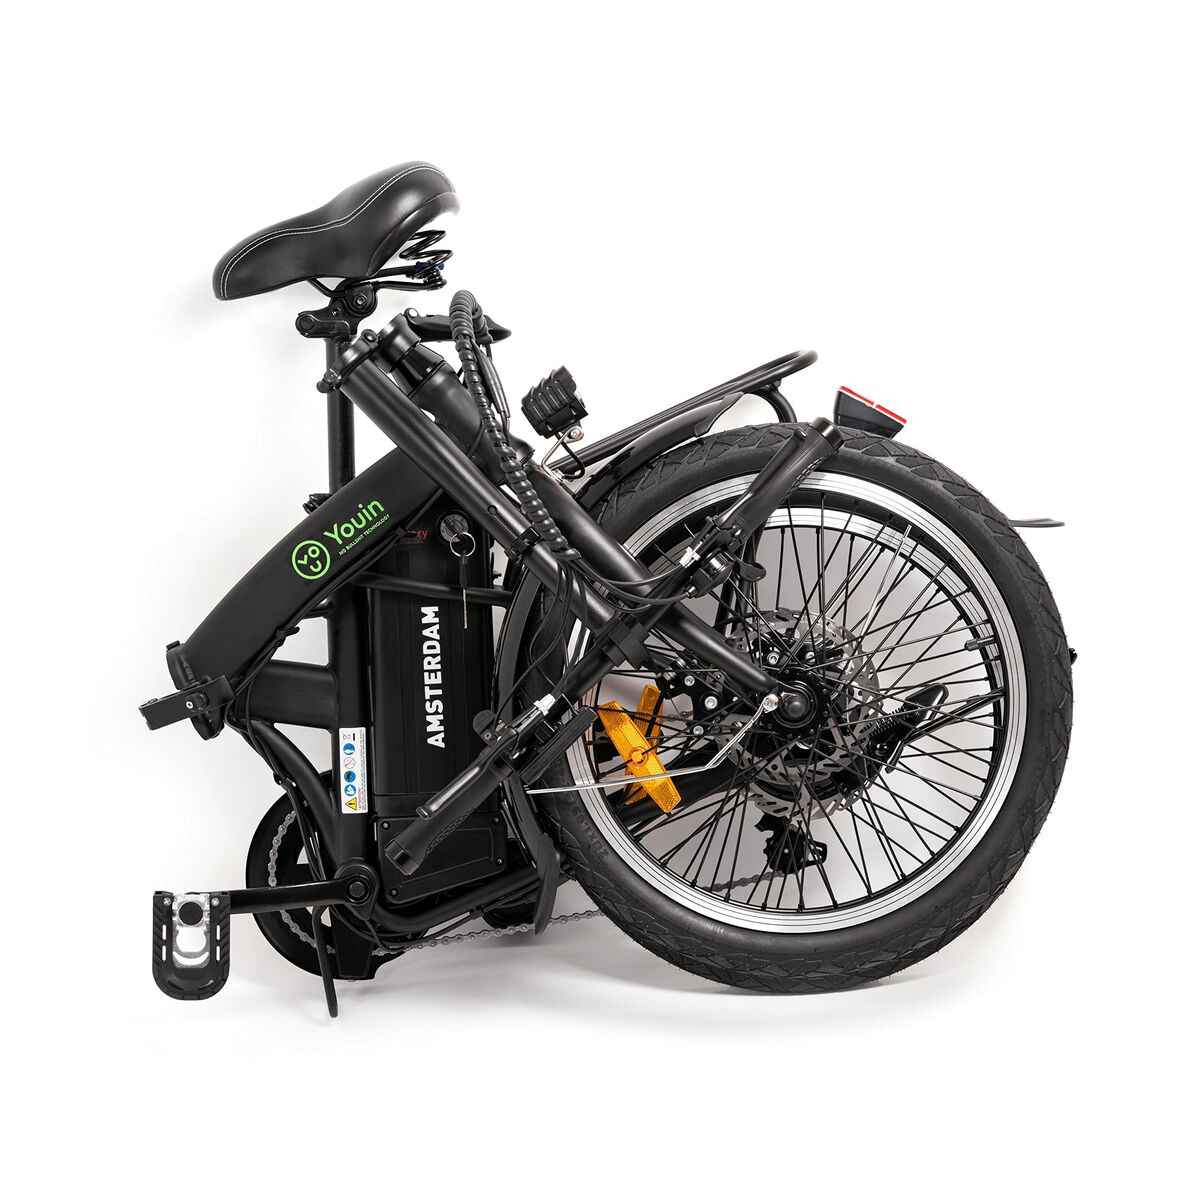 Elektrisches Fahrrad Youin BK1000 AMSTERDAM Schwarz 20" 250 W 25 km/h